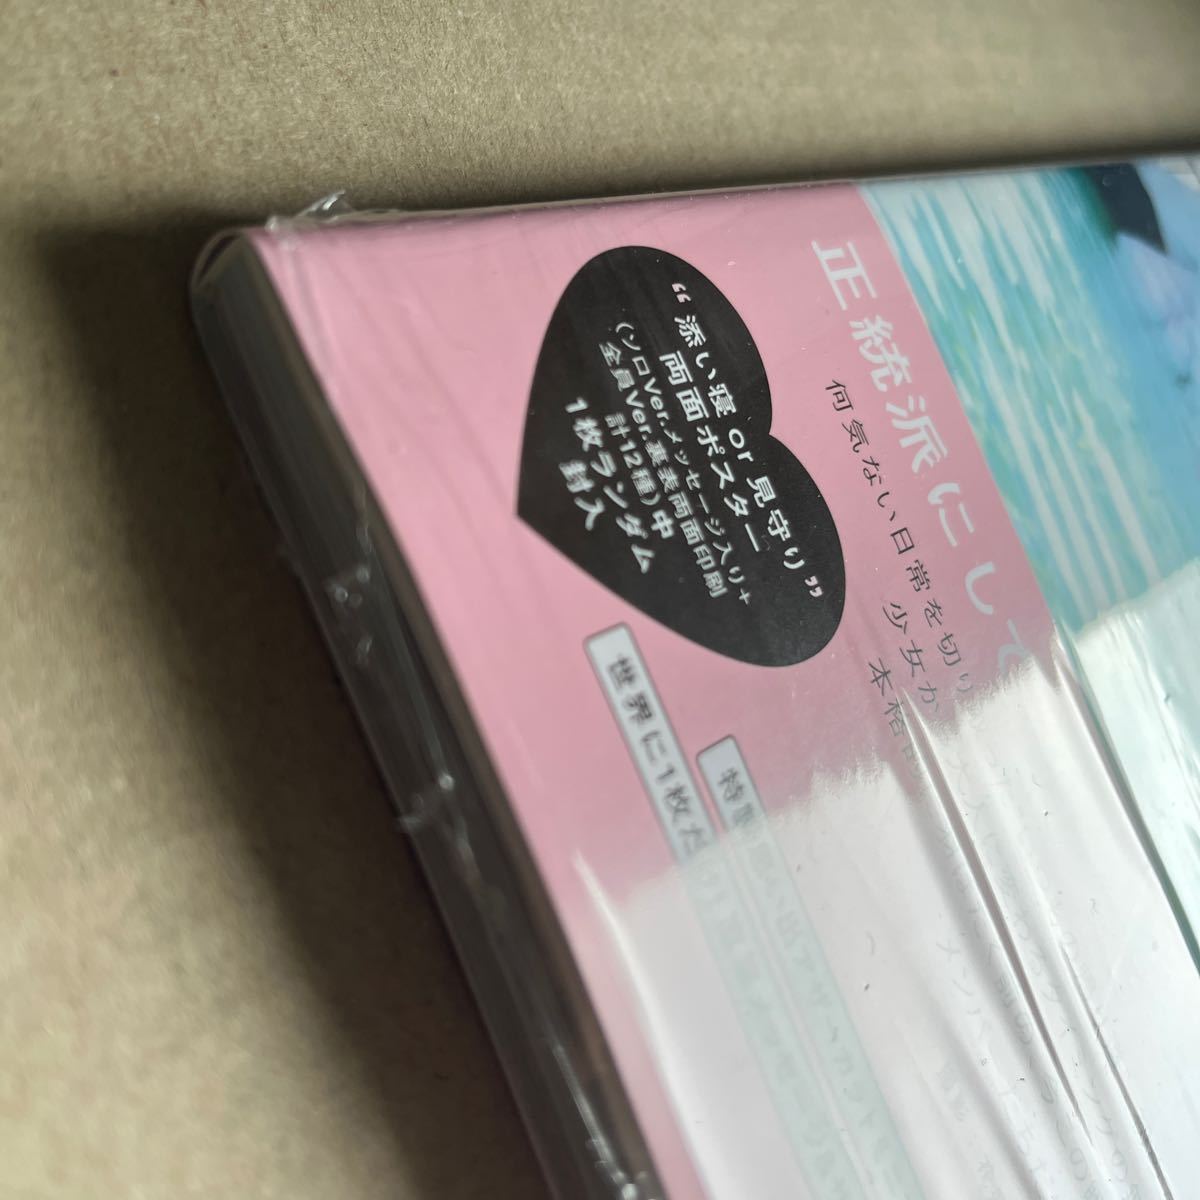 乃木坂46 5期生 写真集「あの頃、乃木坂にいた」 通常盤 封入ポスター、応募券なし 書店特典ポストカードあり 未読品_画像3